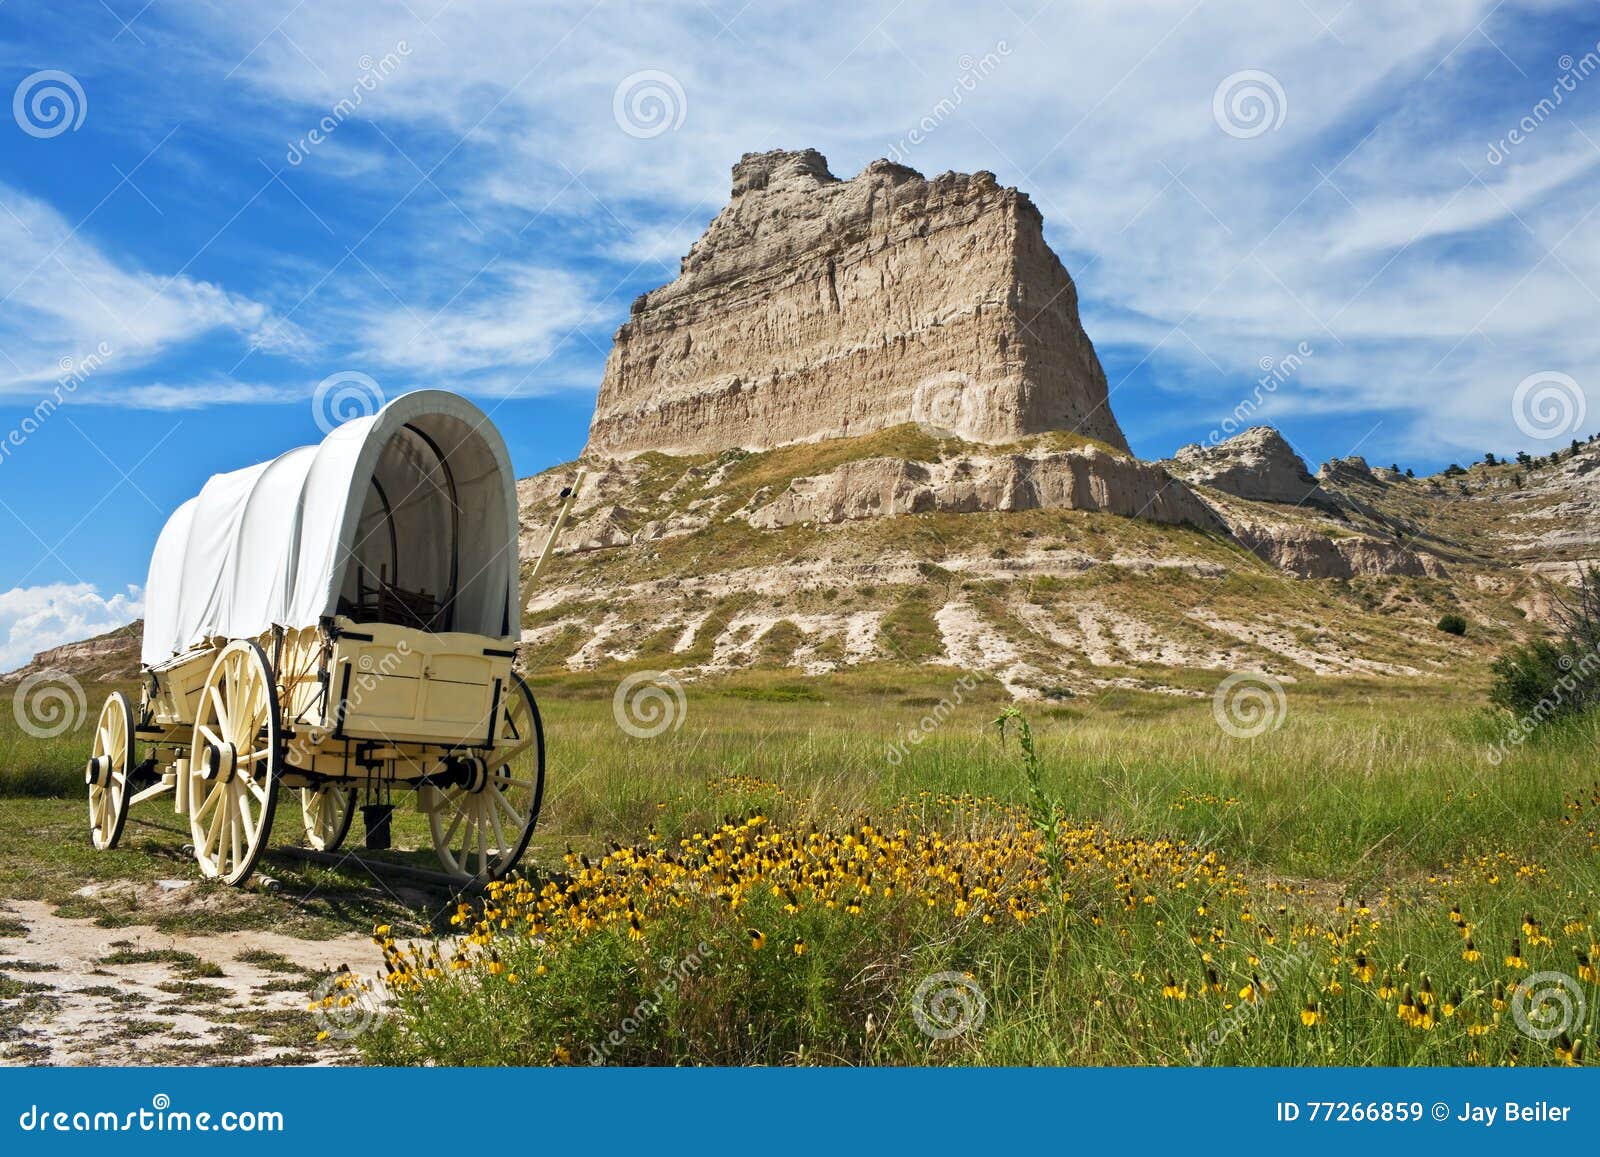 covered wagon, scotts bluff national monument, nebraska